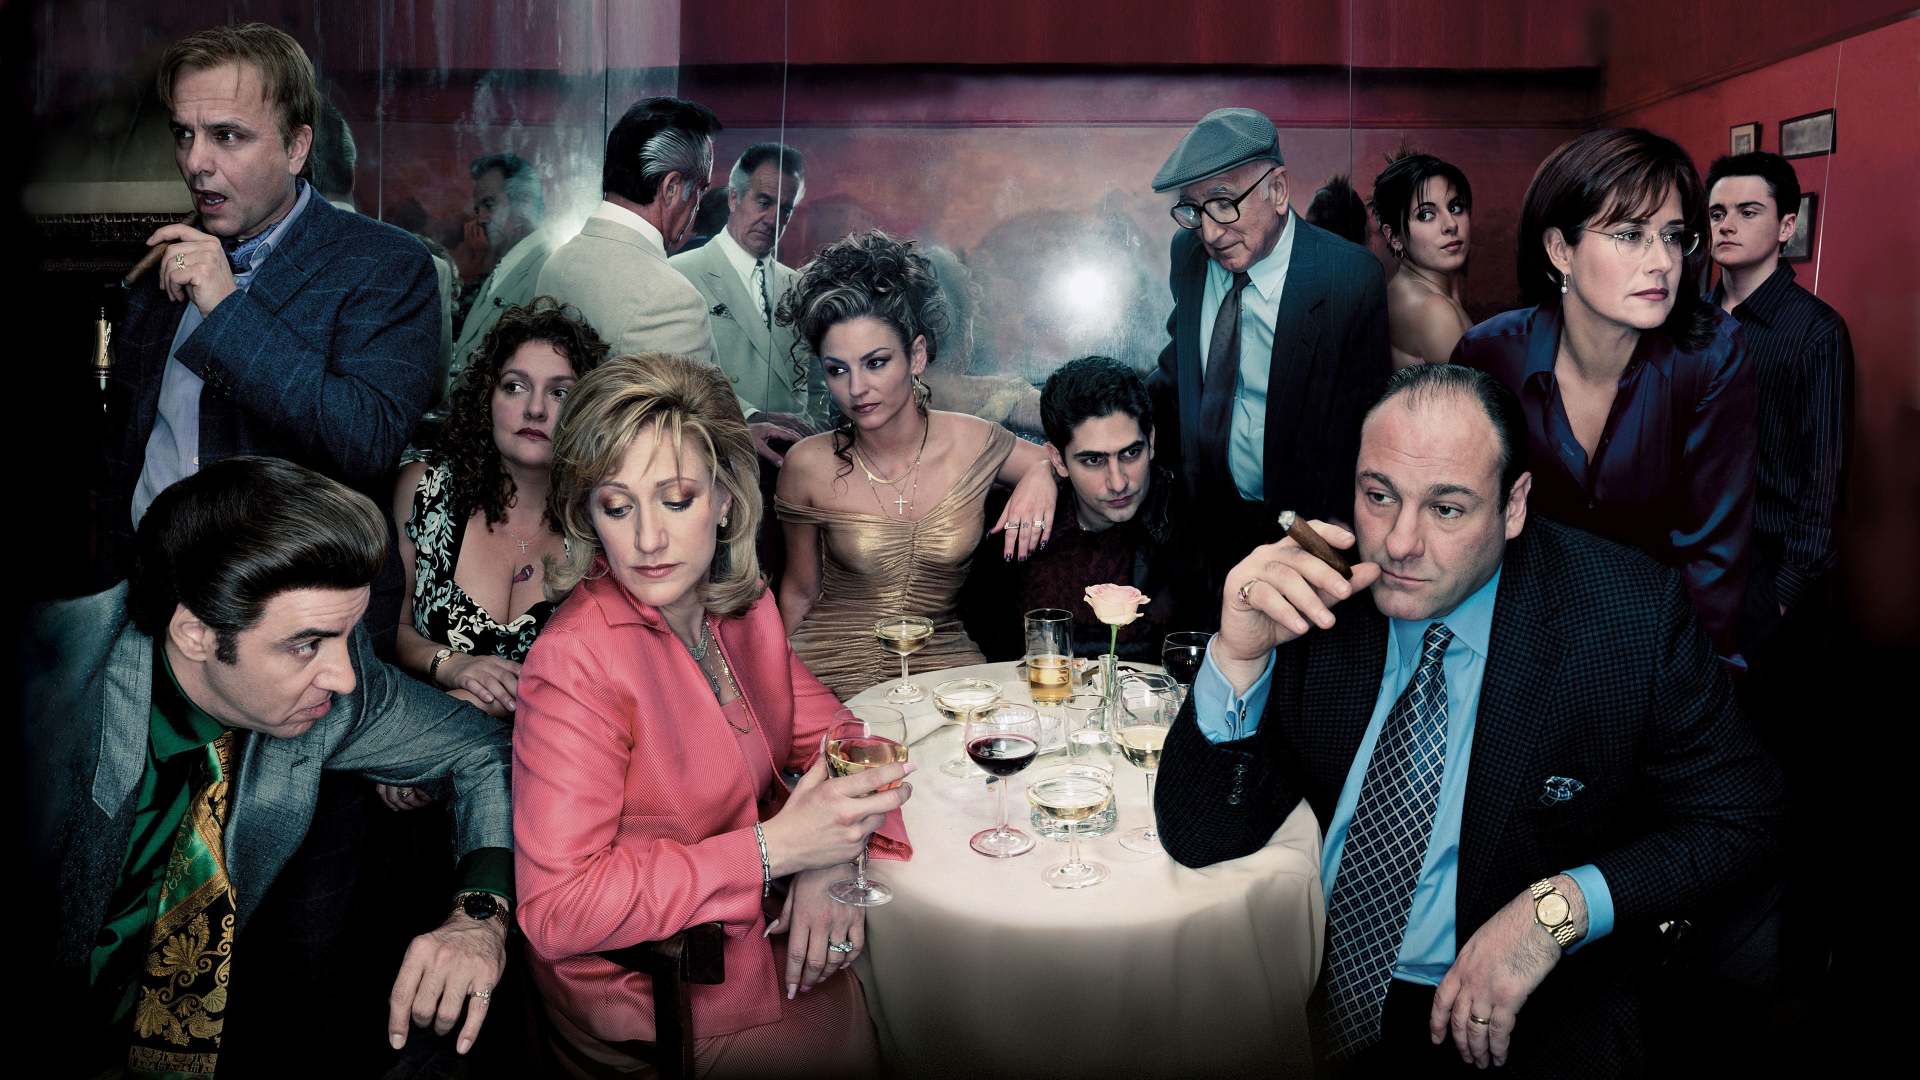 სოპრანოს კლანი / The Sopranos